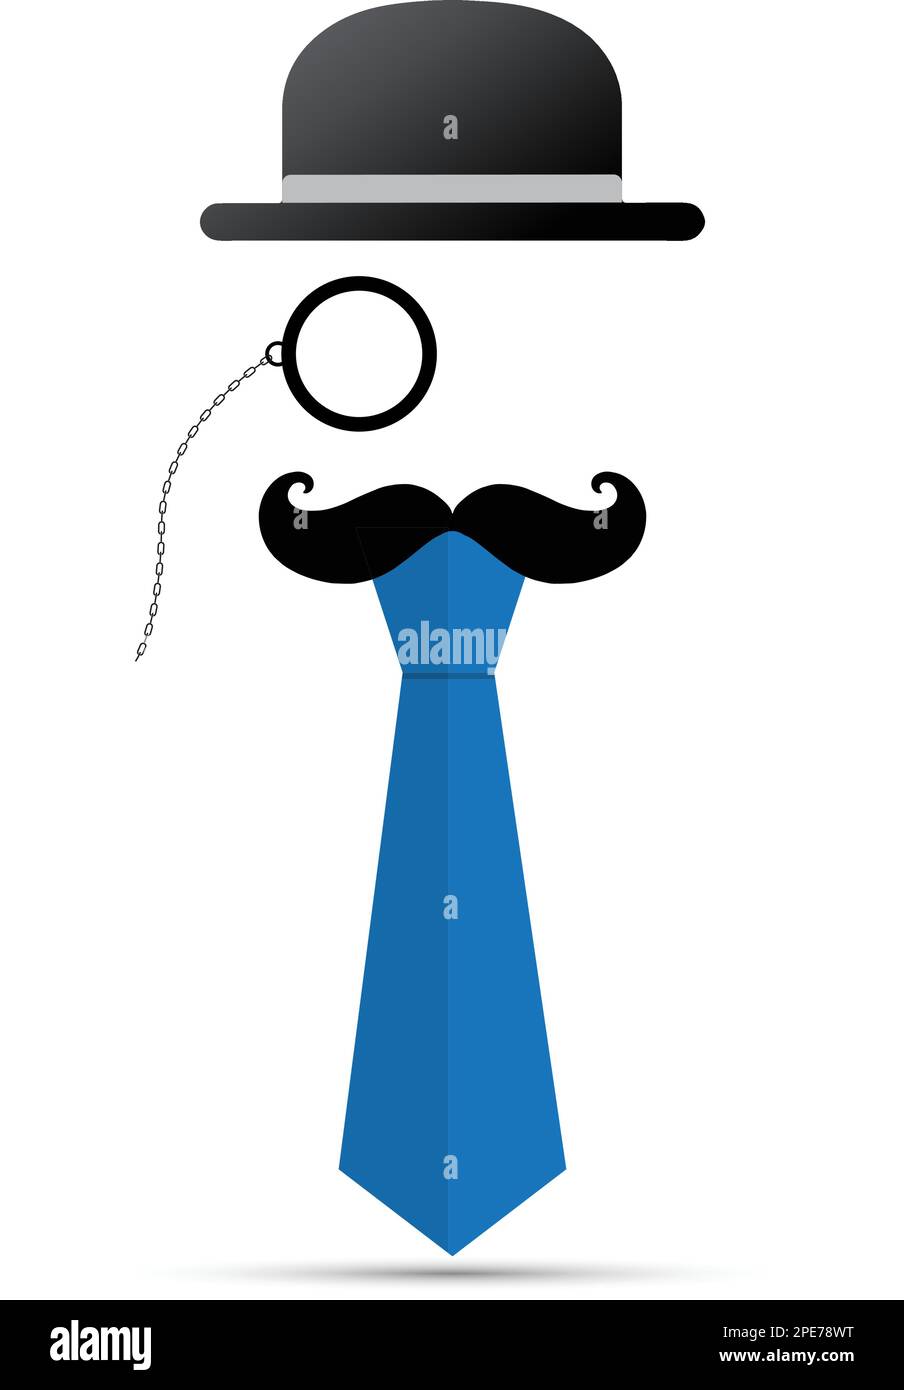 Schwarzer Schnurrbart, Monokel, Hut und blaue Krawatte auf weißem Hintergrund Stock Vektor